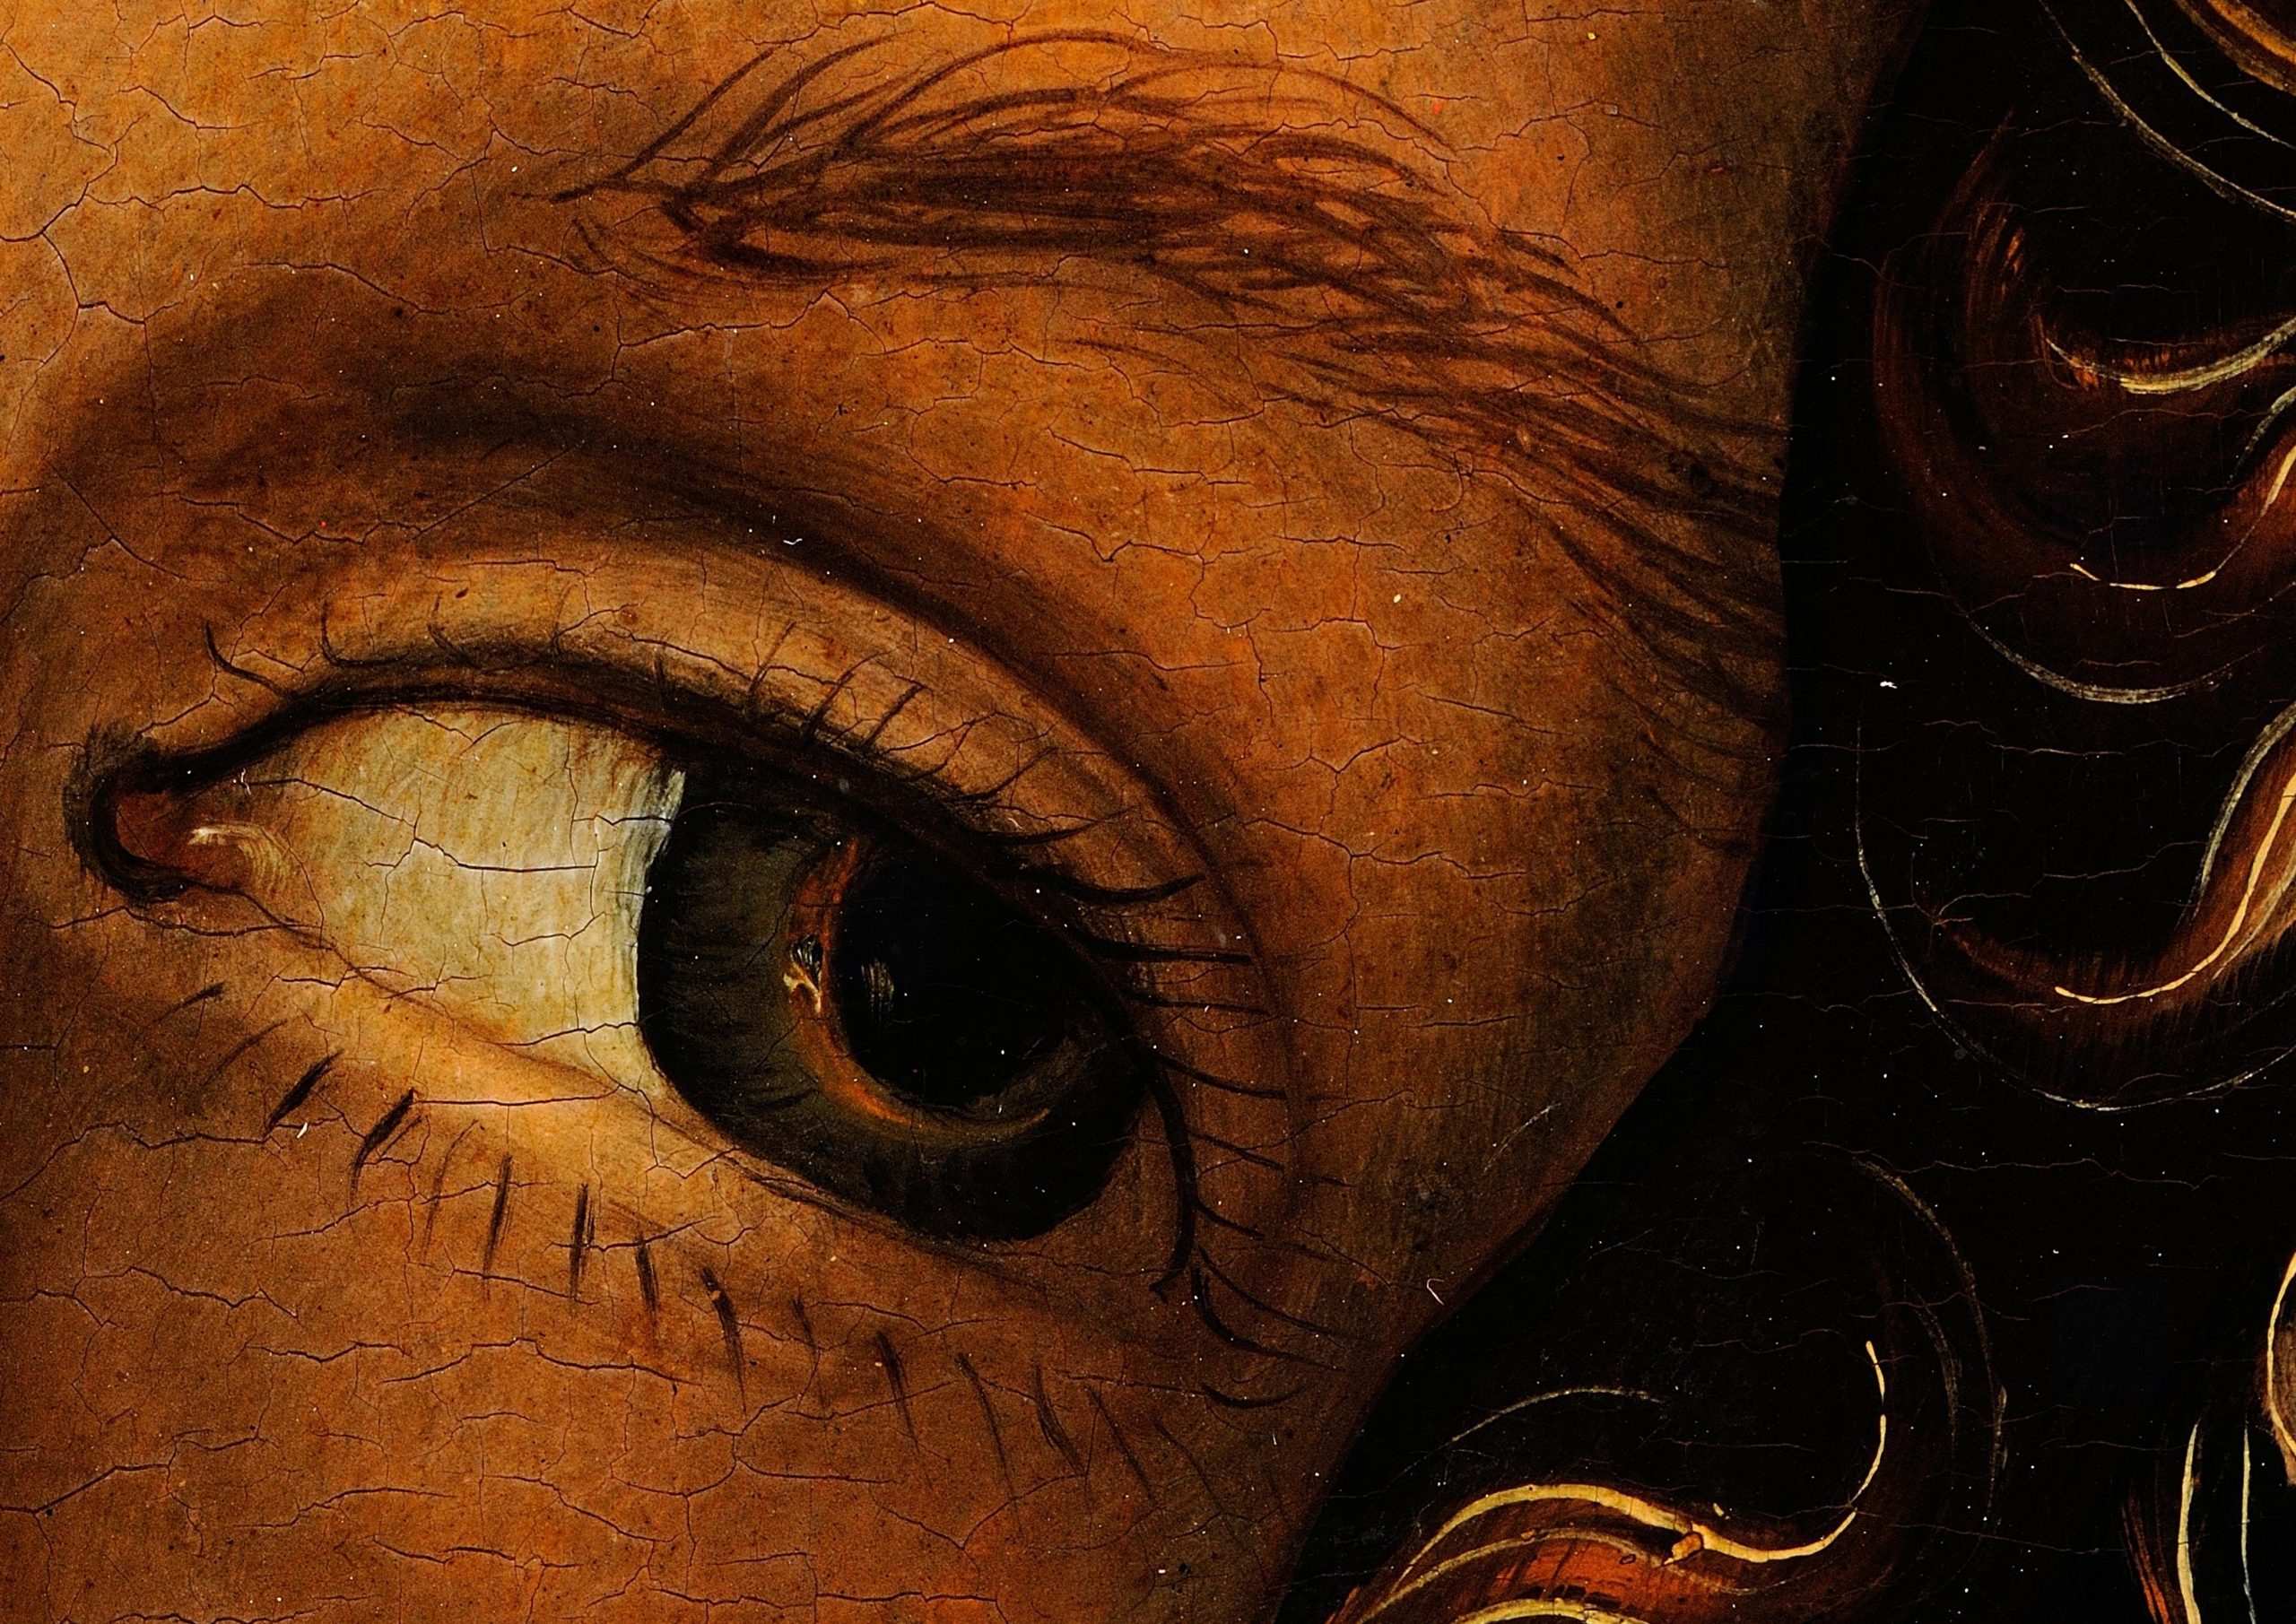 Detailausschnitt des linken Auges von Adam, aus dem Gemälde "Adam" von Lucas Il Vecchio Cranach, gigapixel, haltadefinizione, gemälde, digital, kunstwerk